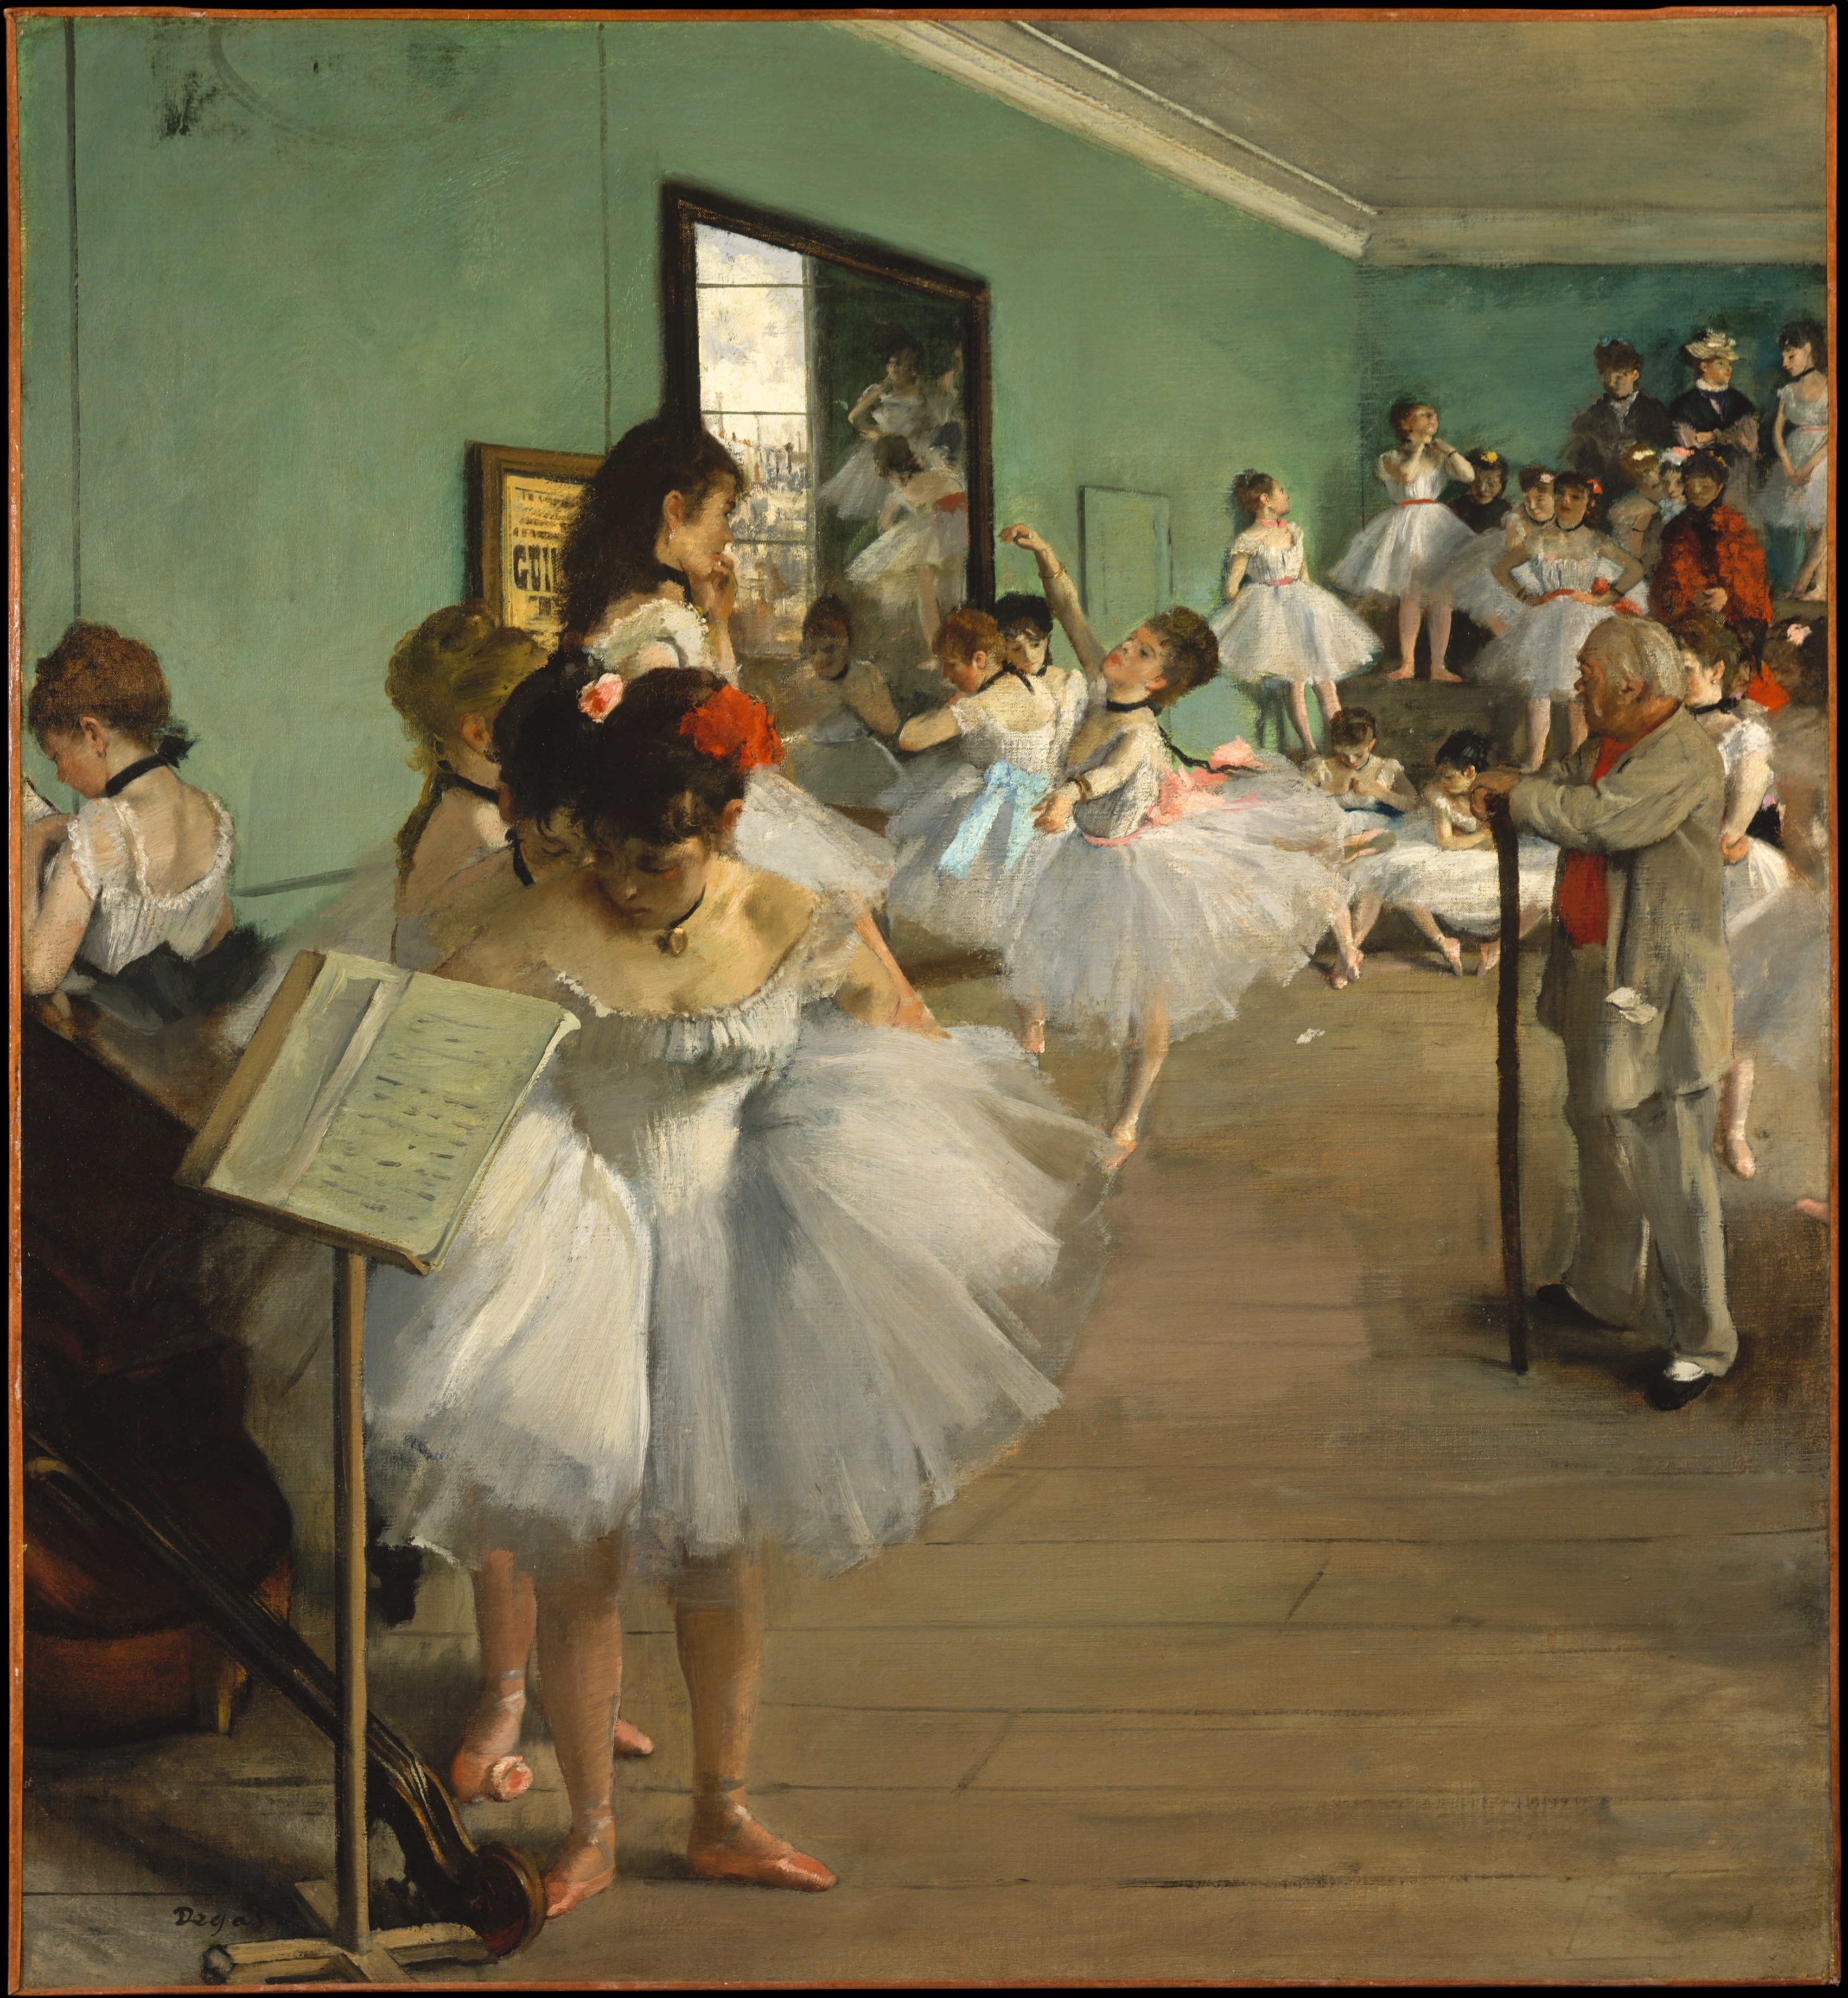 발레수업(The Dance Class) by Edgar Degas - 1874 - 83.5 x 77.2 cm 